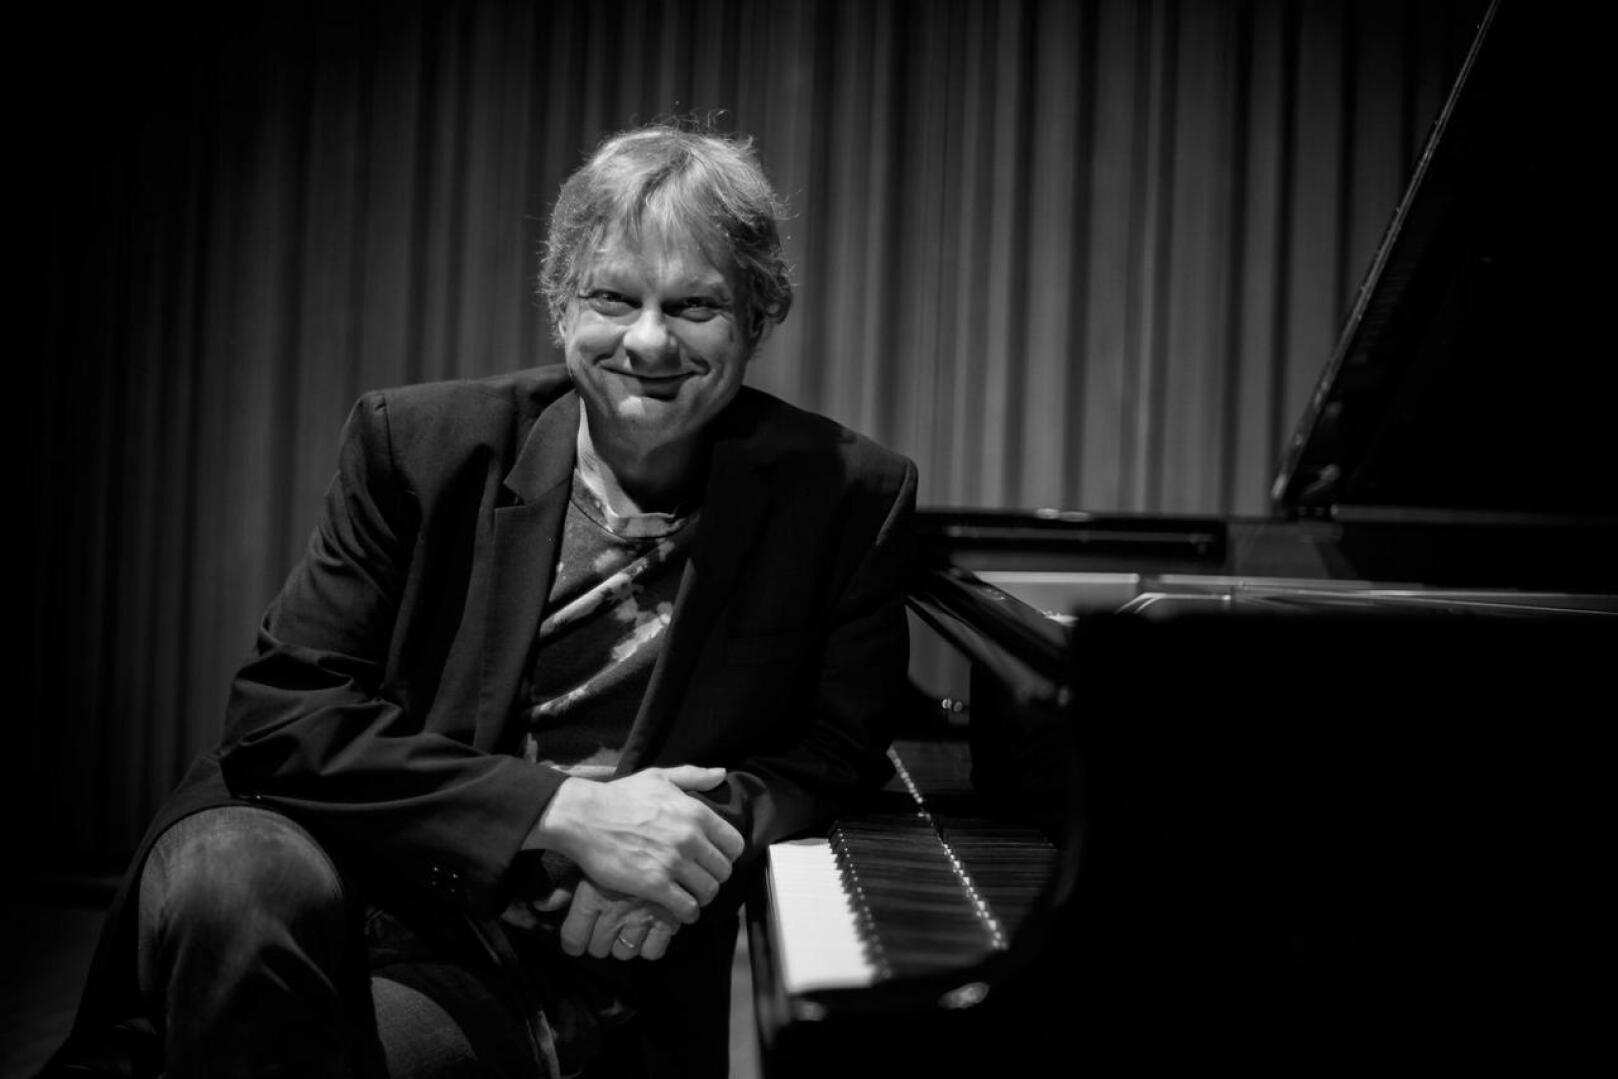 Kansainvälisesti tunnettu pianisti-säveltäjä Iiro Rantala kertoo ”My Finnish Calendar” -konsertissa musiikillaan –  ja välispiikeissä – miten suomalainen kokee vuodenaikojen muutokset.